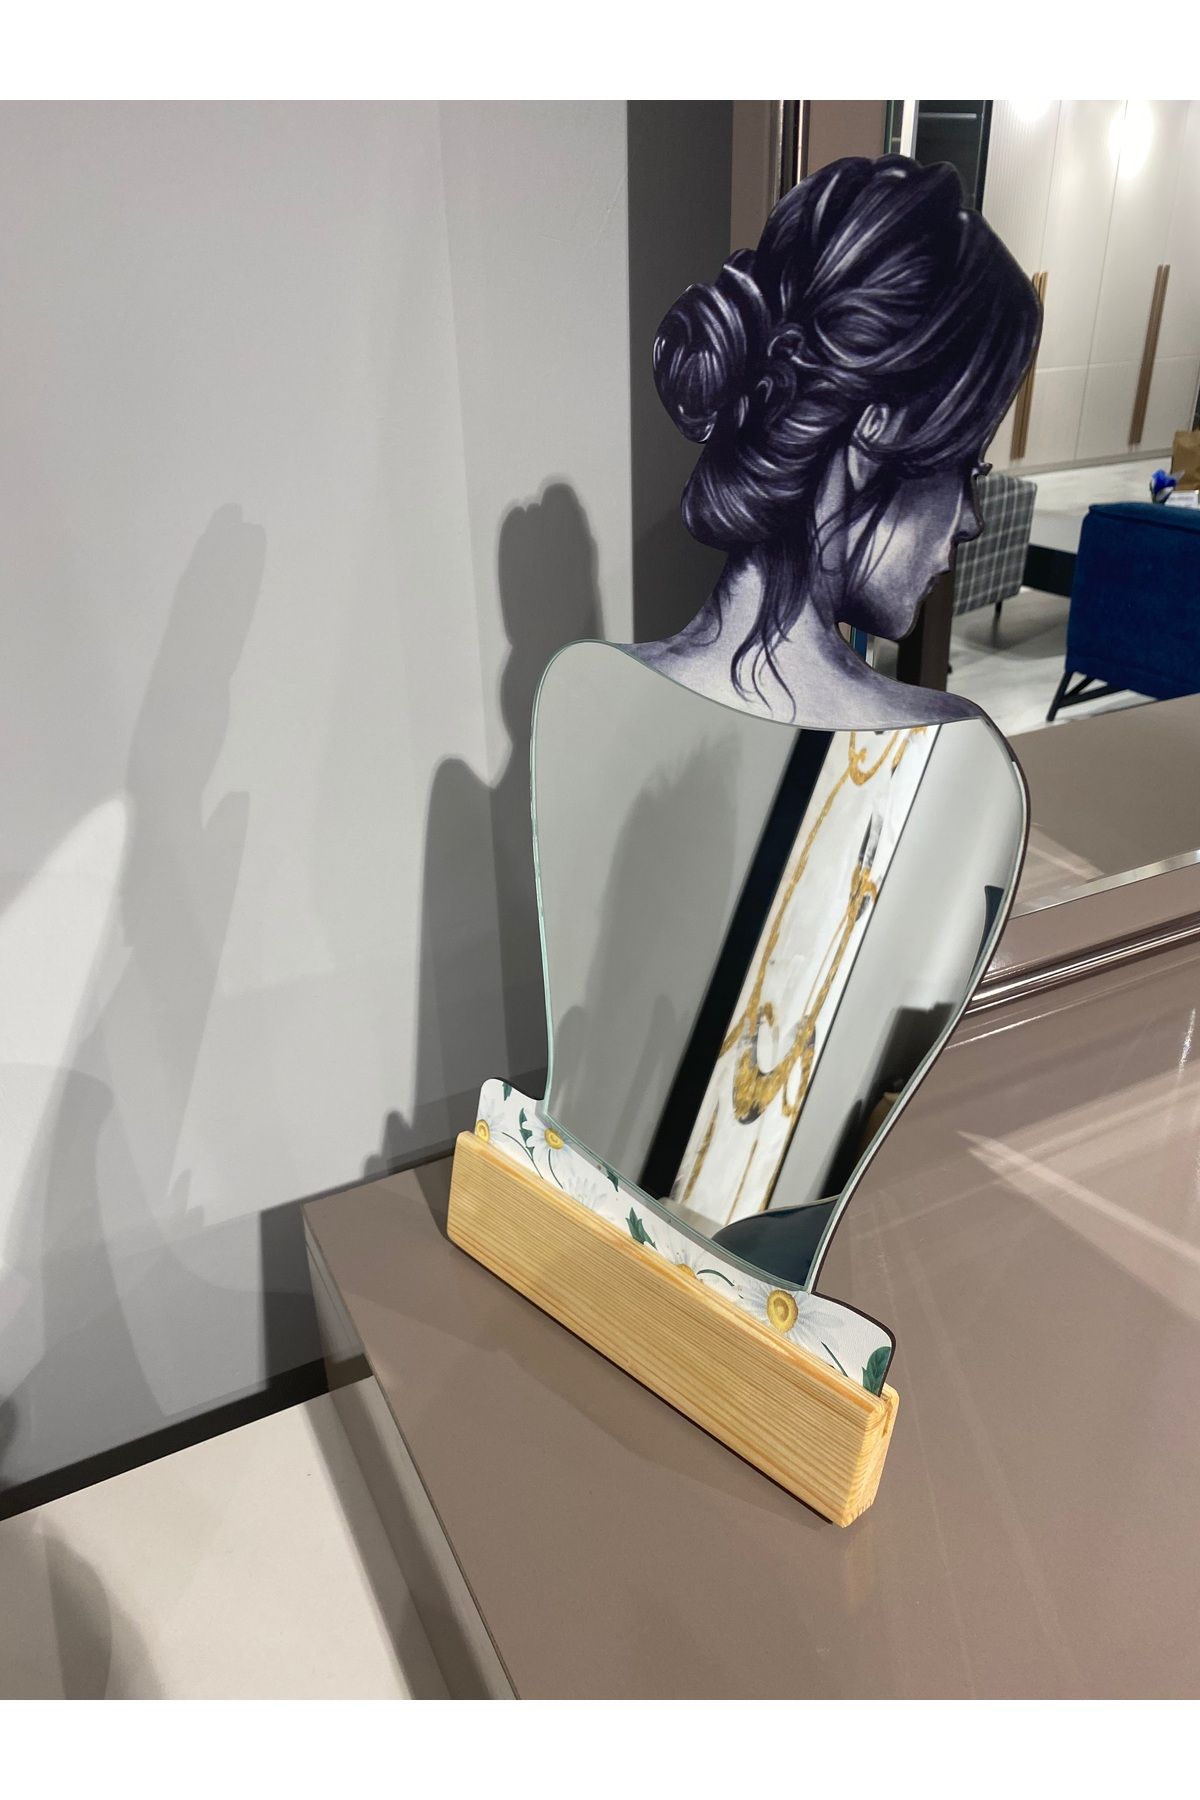 wodelia Kadın Temalı Dekoratif Makyaj Aynası, Modern Eşsiz Ayna,Ofis Masa Modern Ev Aynası38x21Cm ŞeffafCila